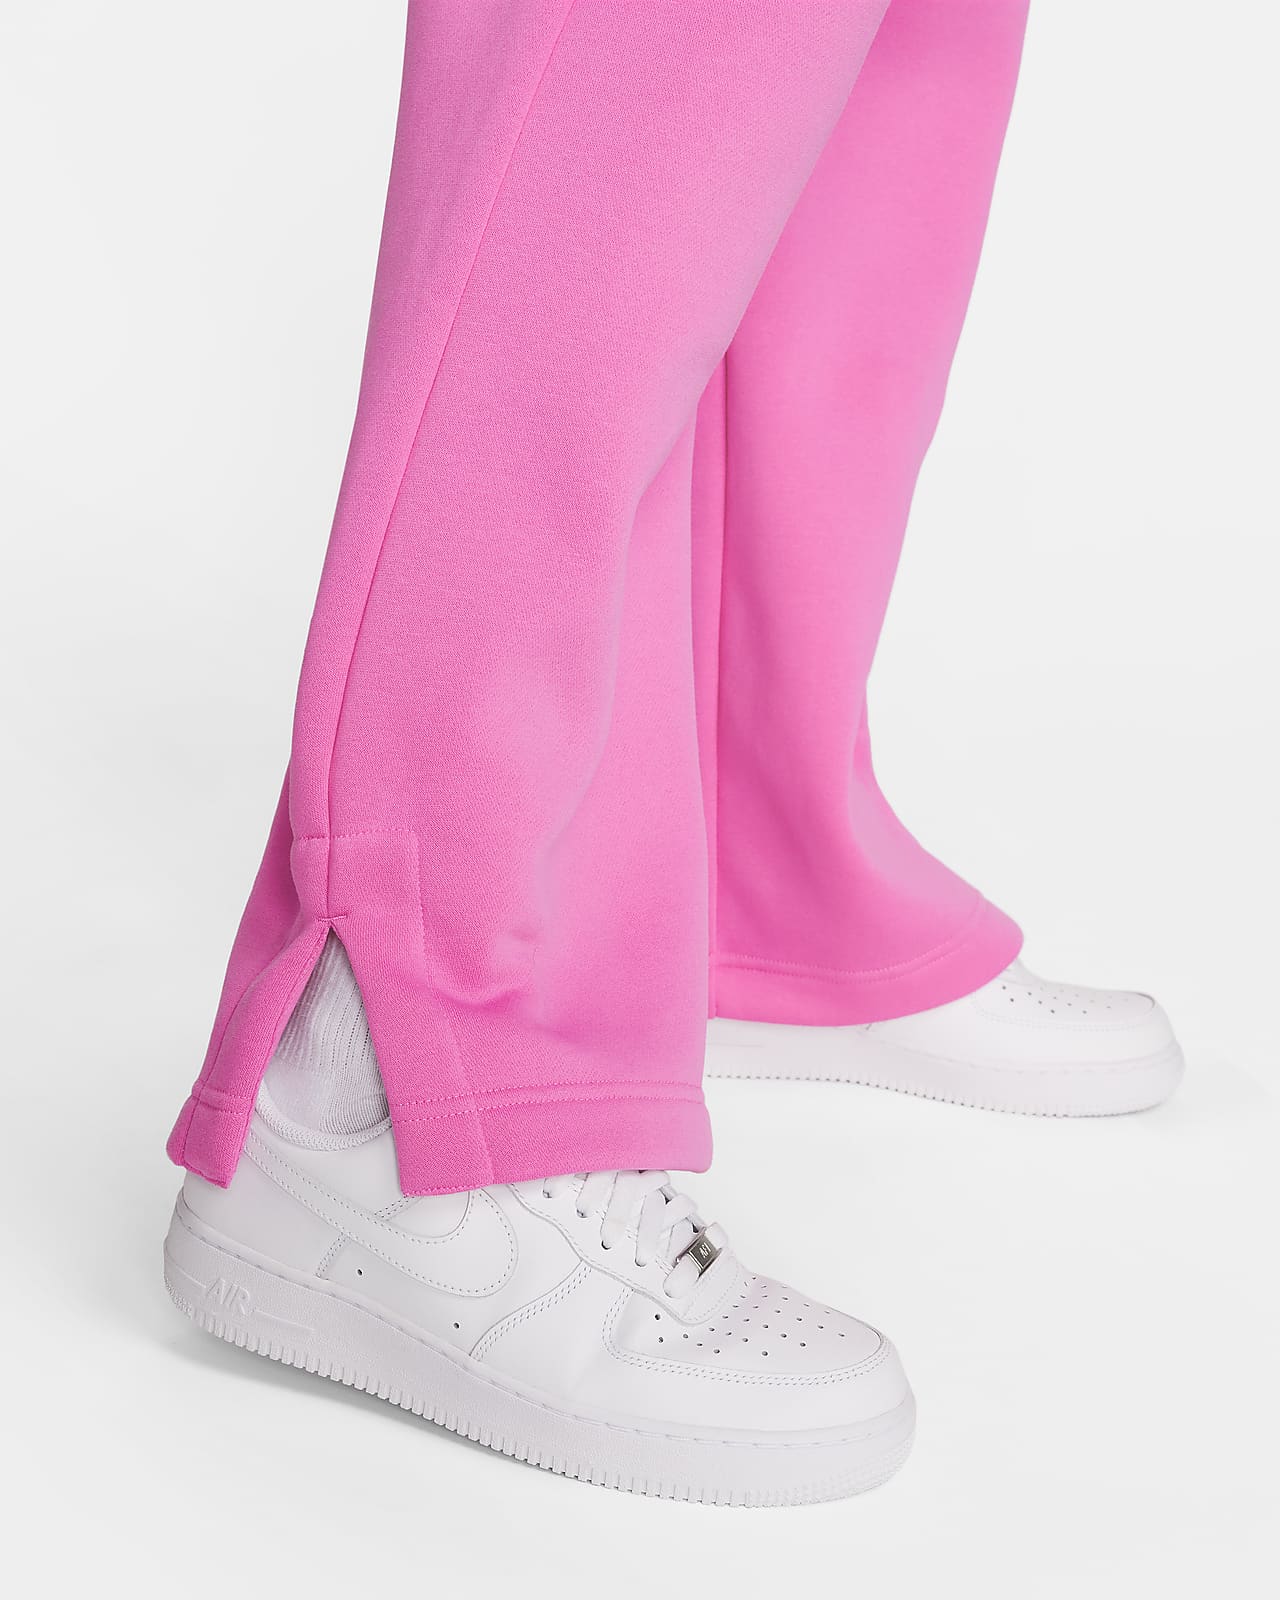 Stylish Nike Pink Gym Sweatpants